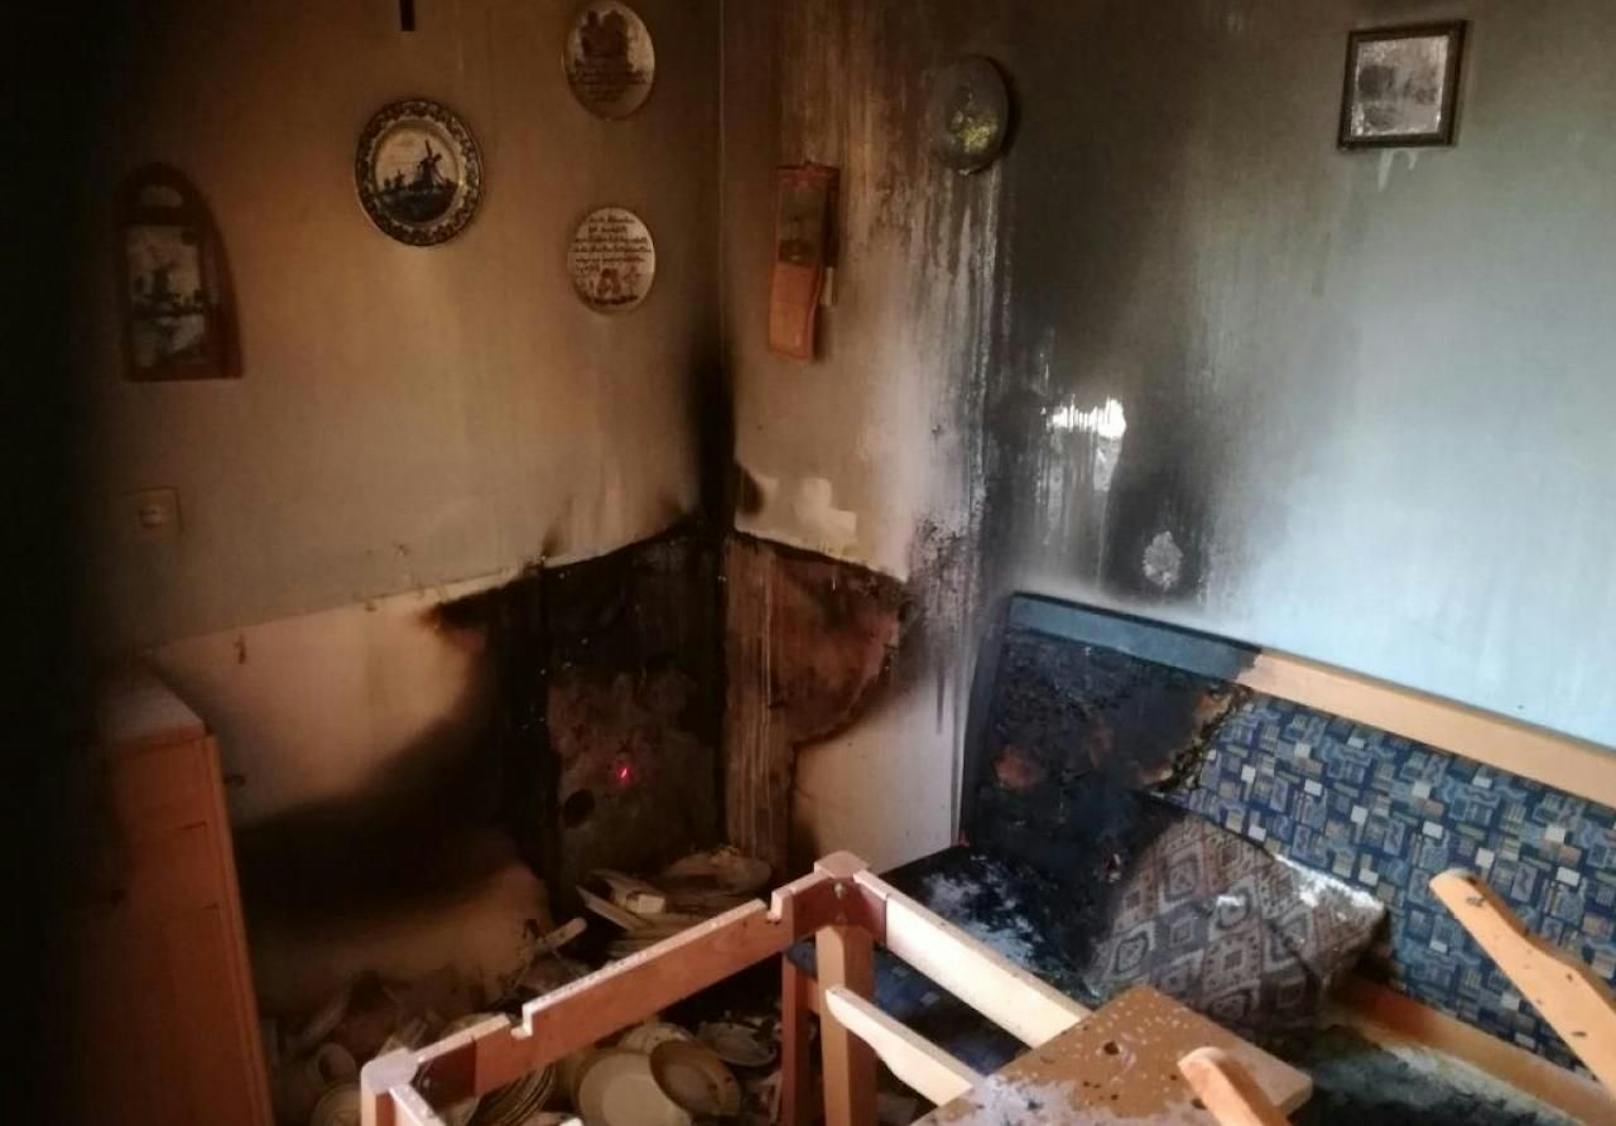 Passant rettet Ehepaar aus brennender Wohnung